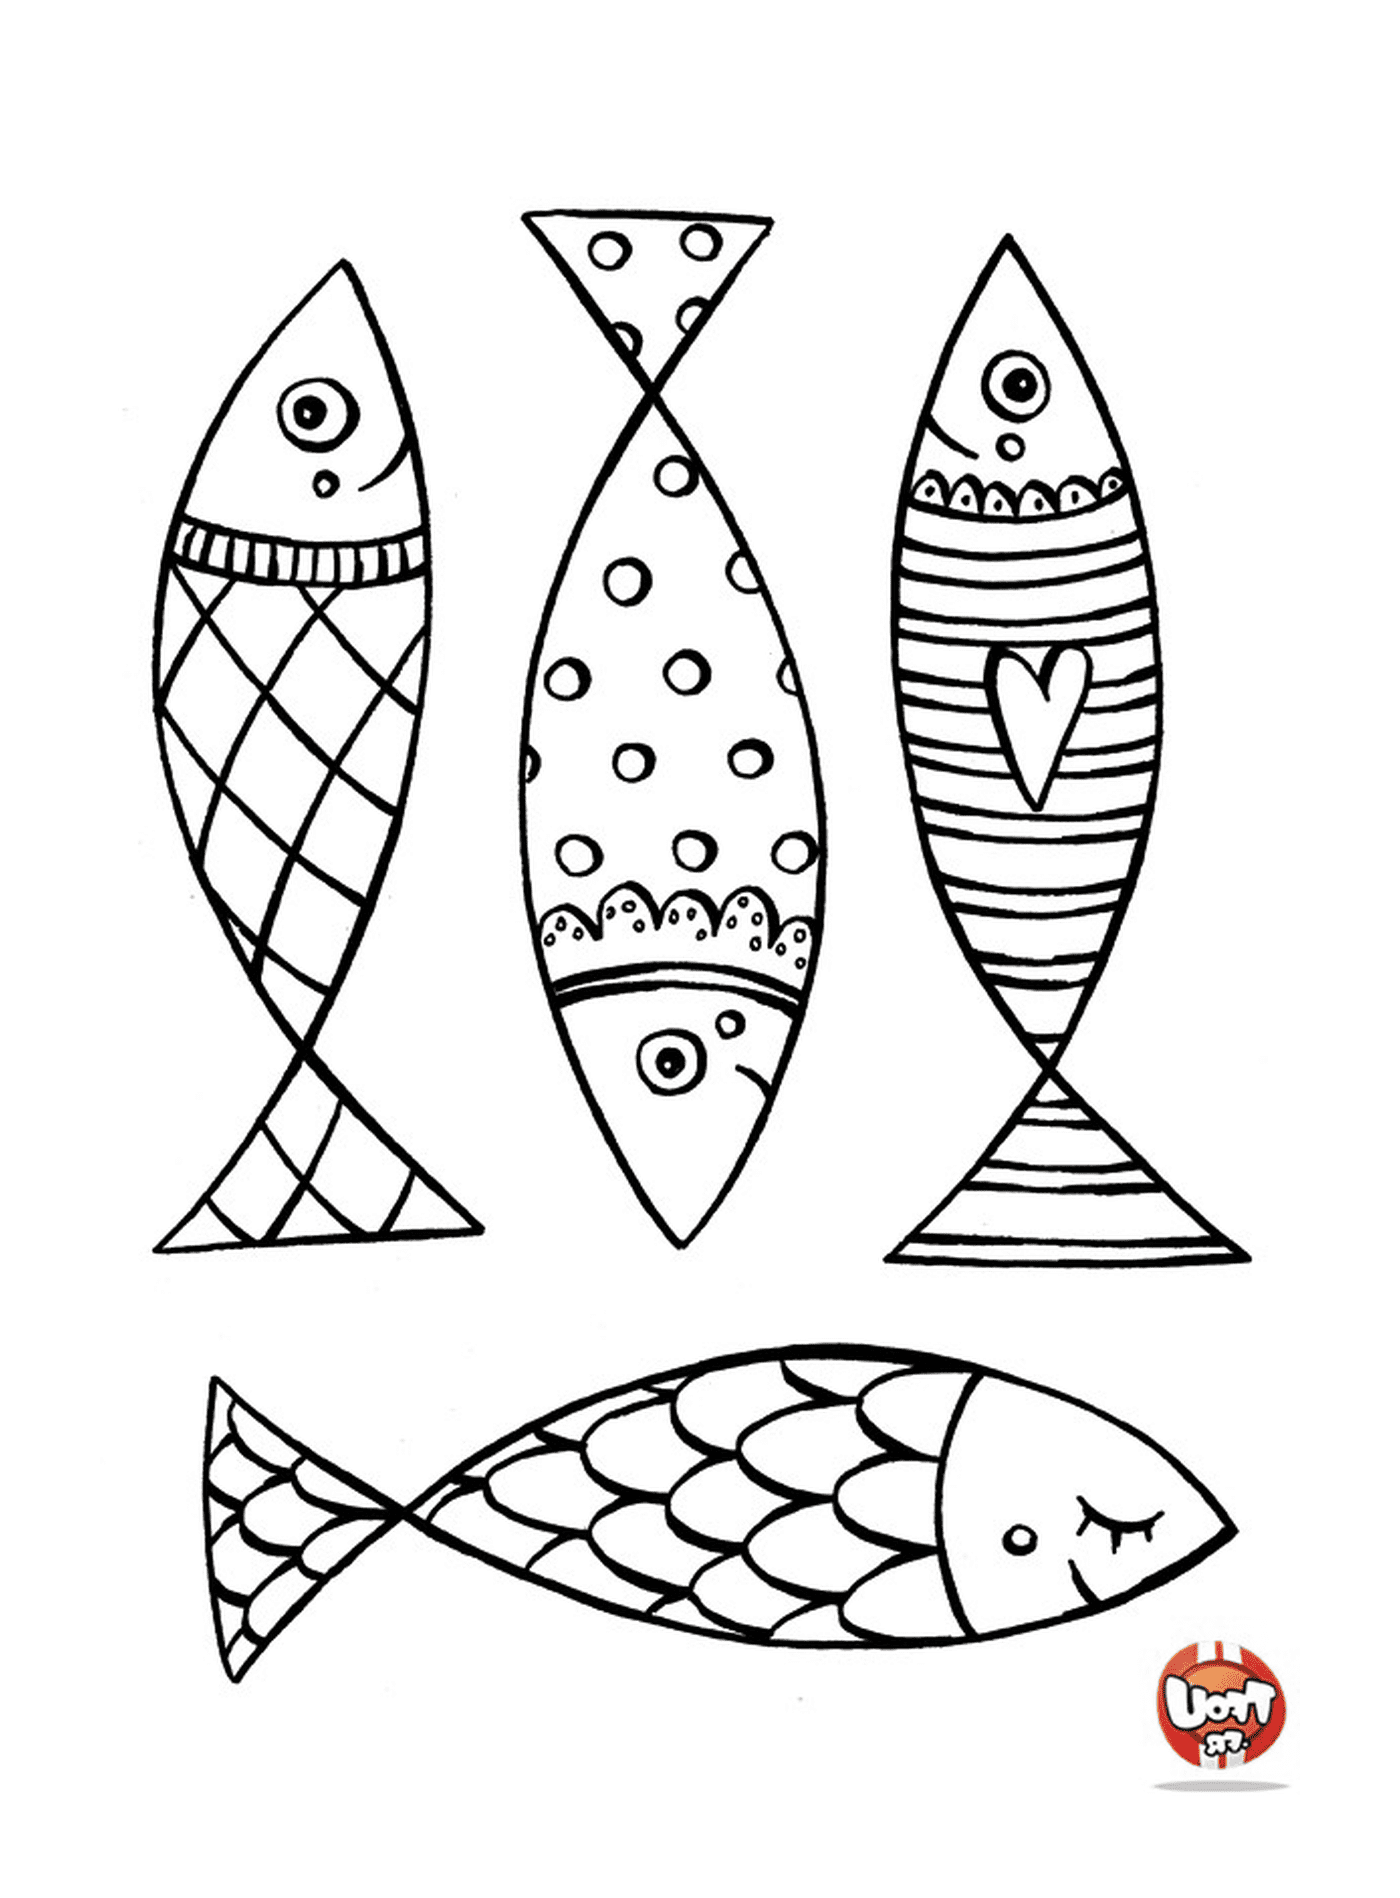   Ensemble de quatre designs de poissons différents 